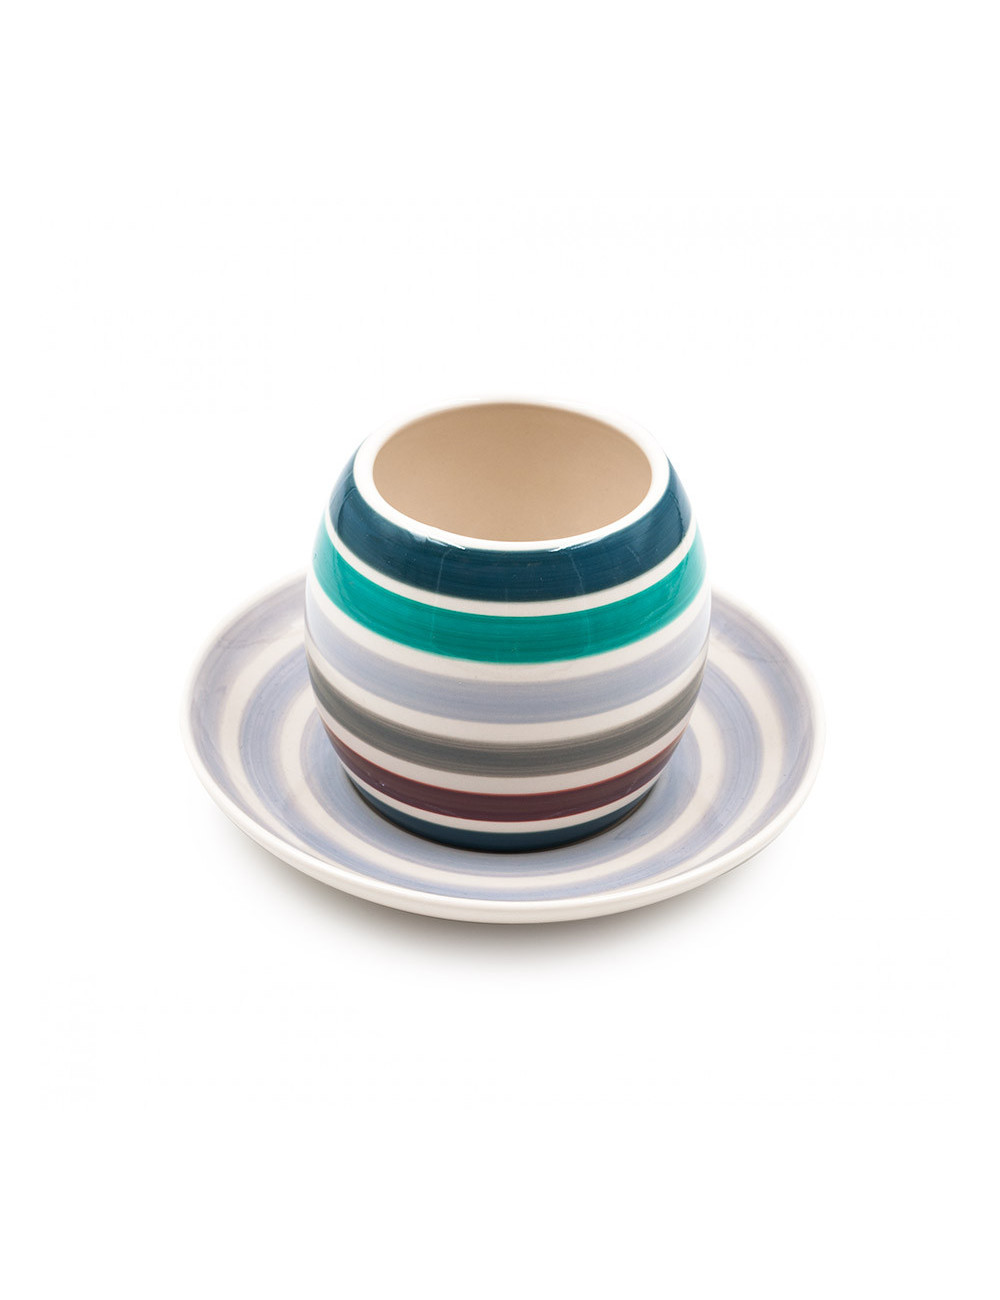 Tazza moderna Jaron in ceramica dalla decorazione a righe multicolore - La Pianta del Tè shop on line